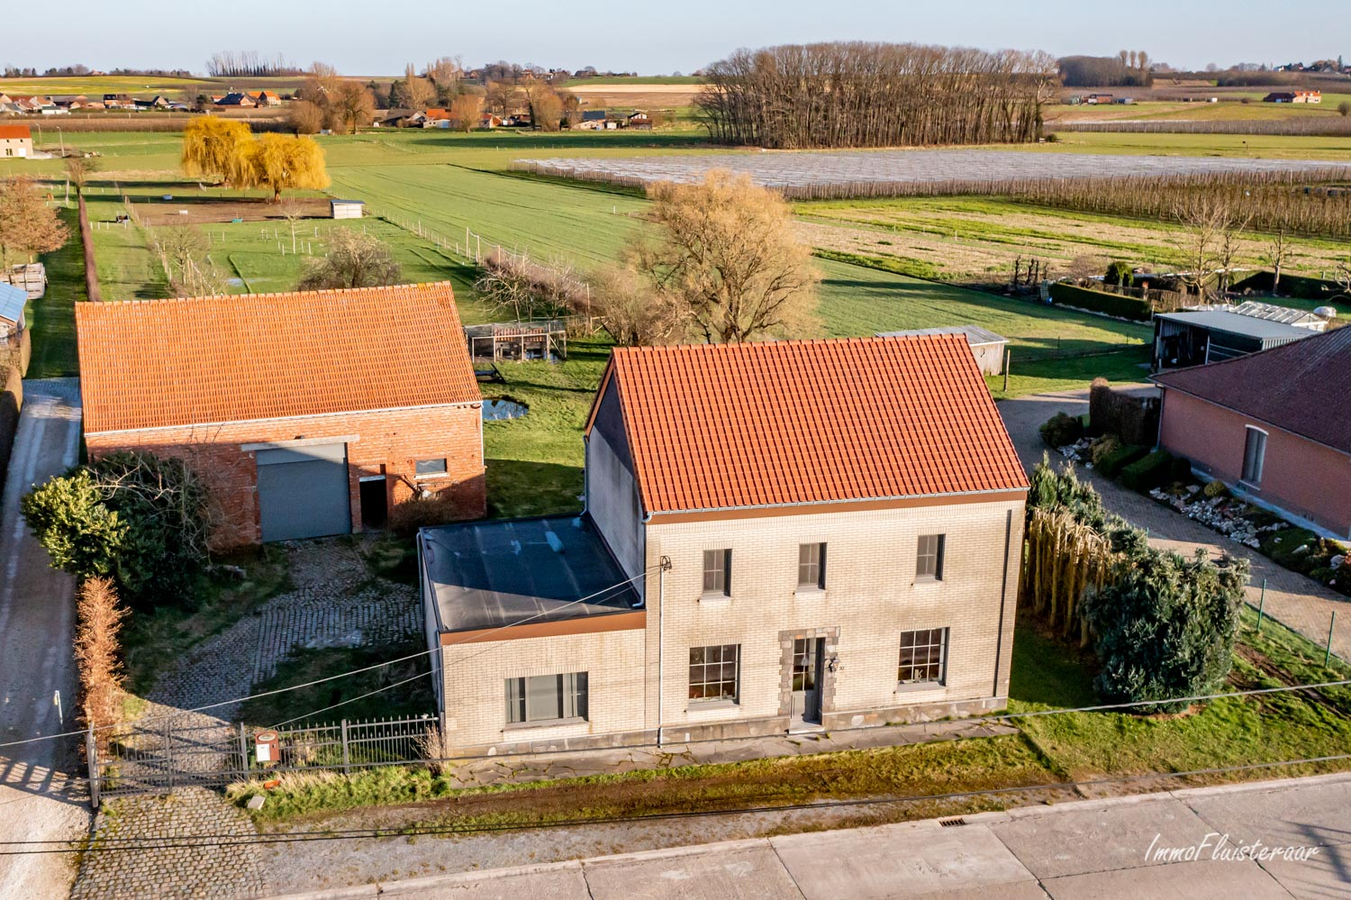 Property sold in Kortenaken